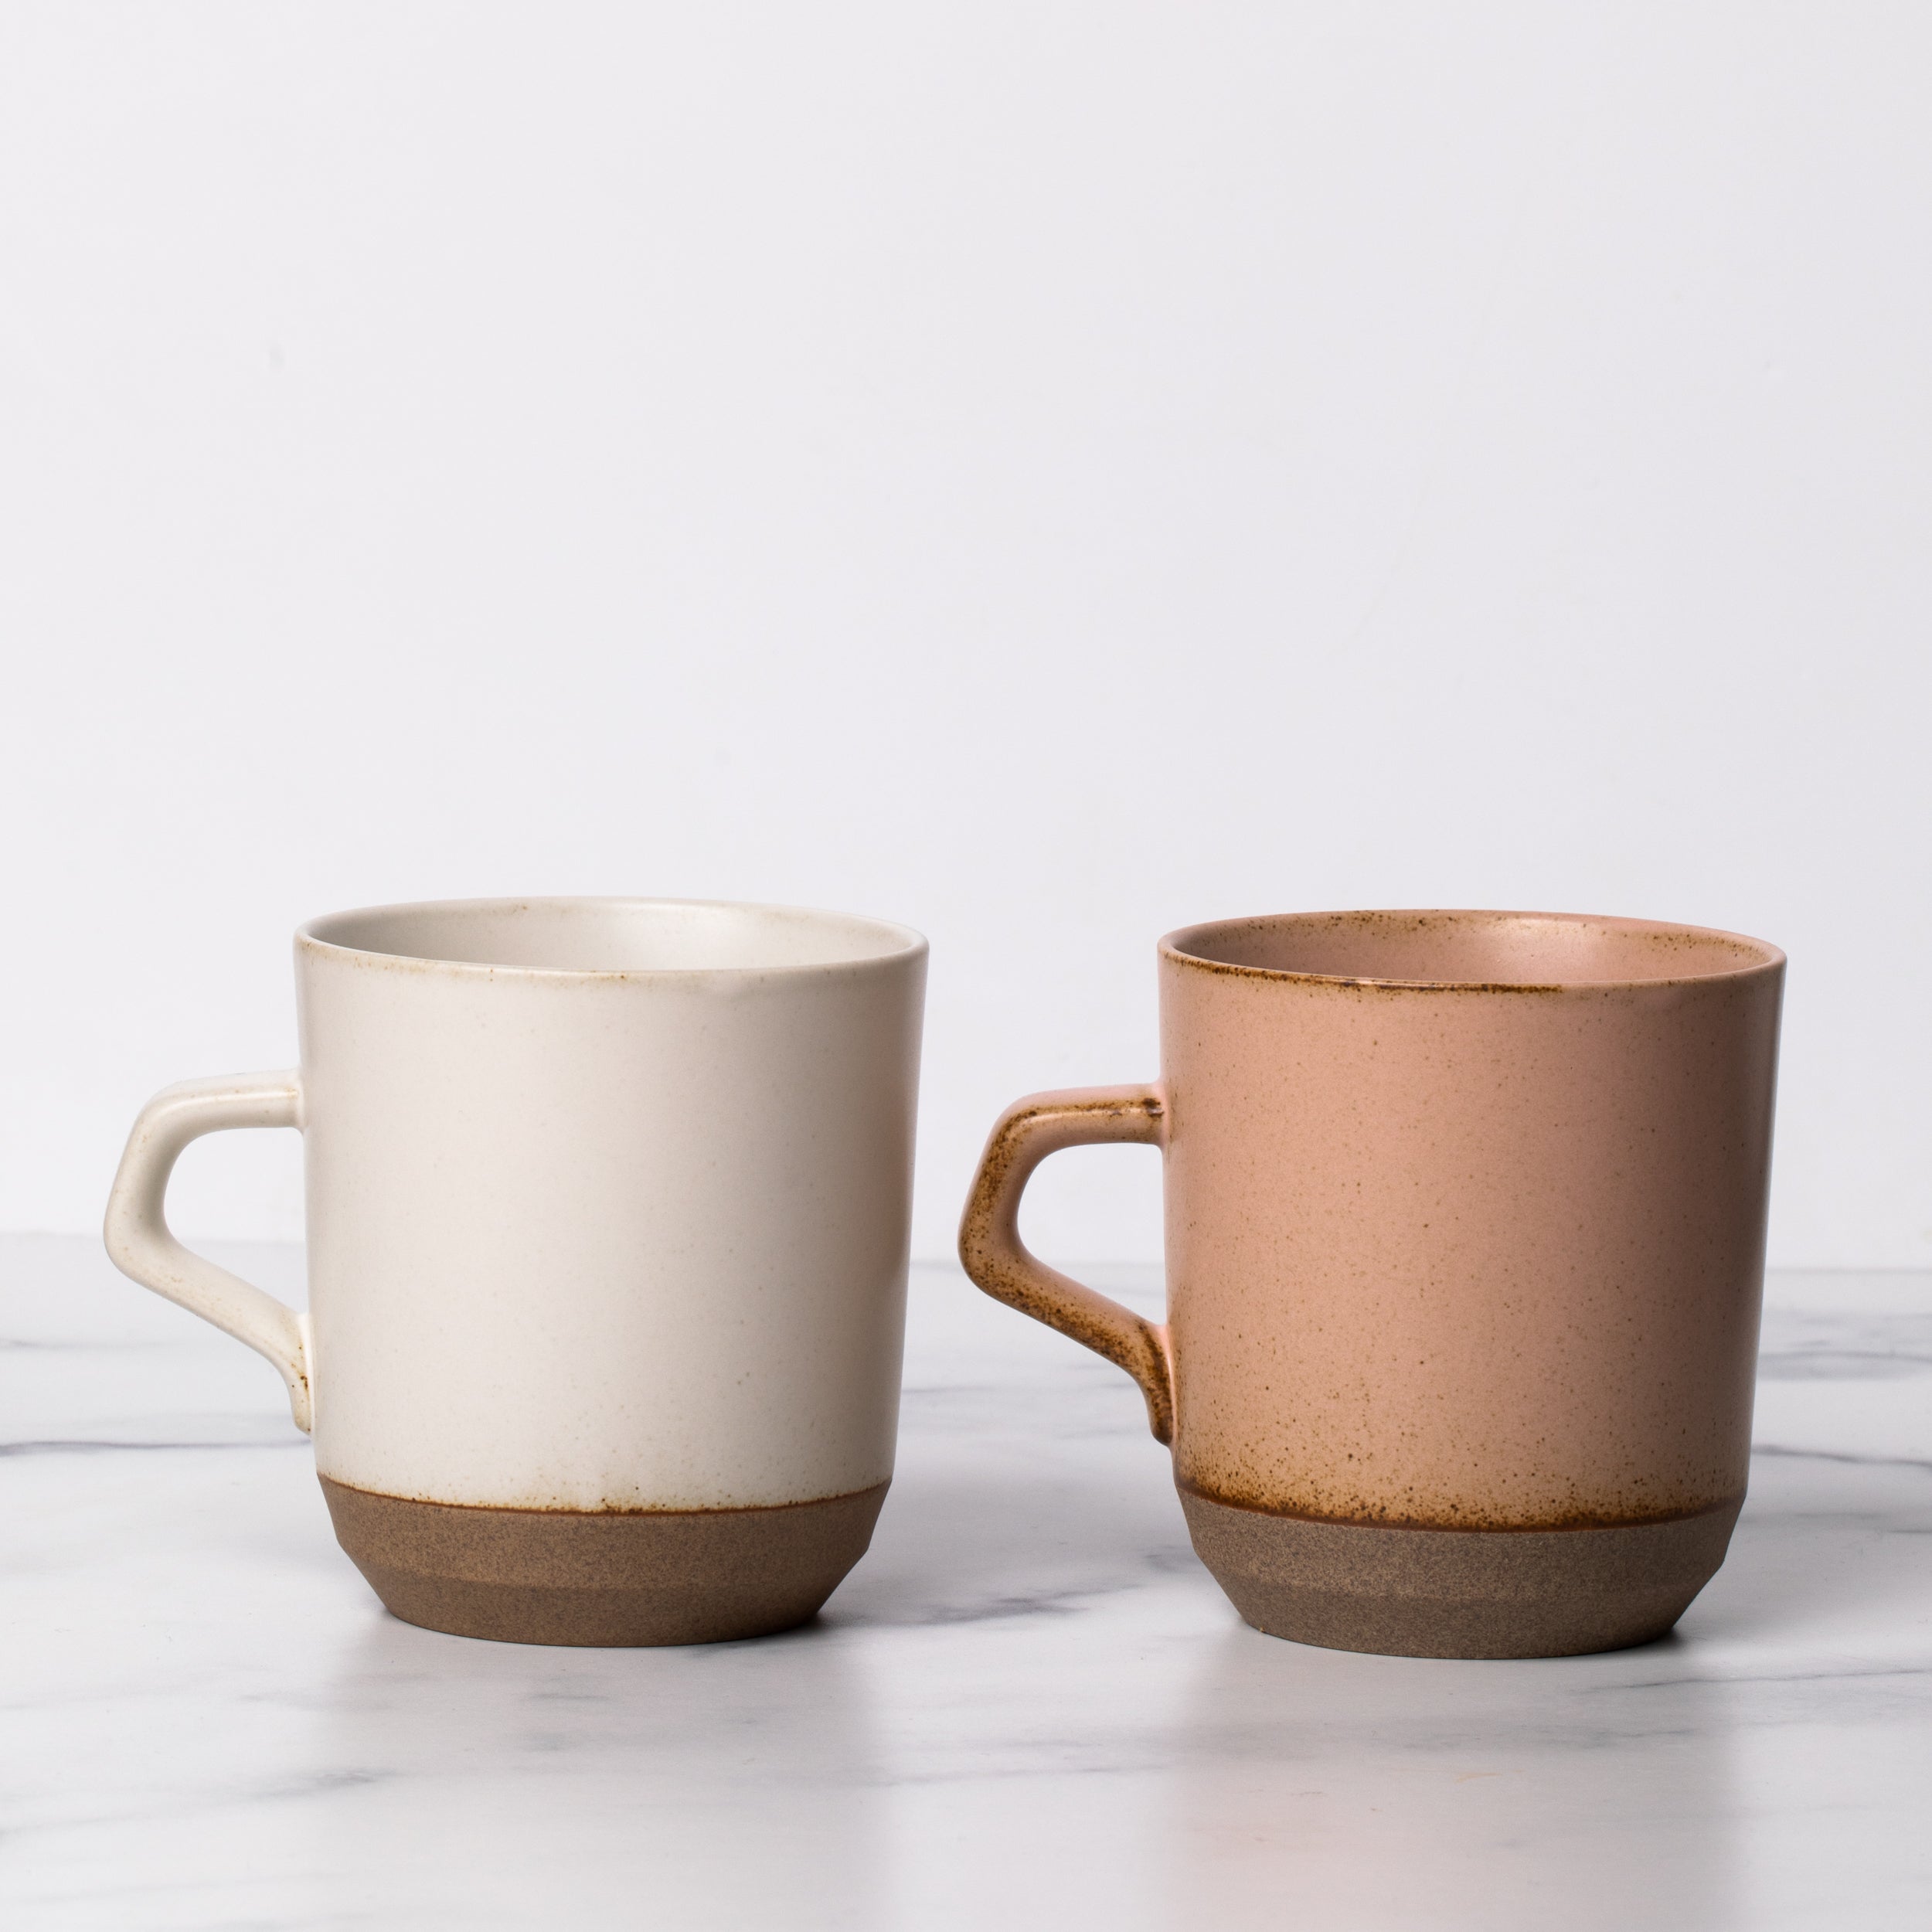 One white ceramic mug with a handle next to a pink ceramic mug with a handle.